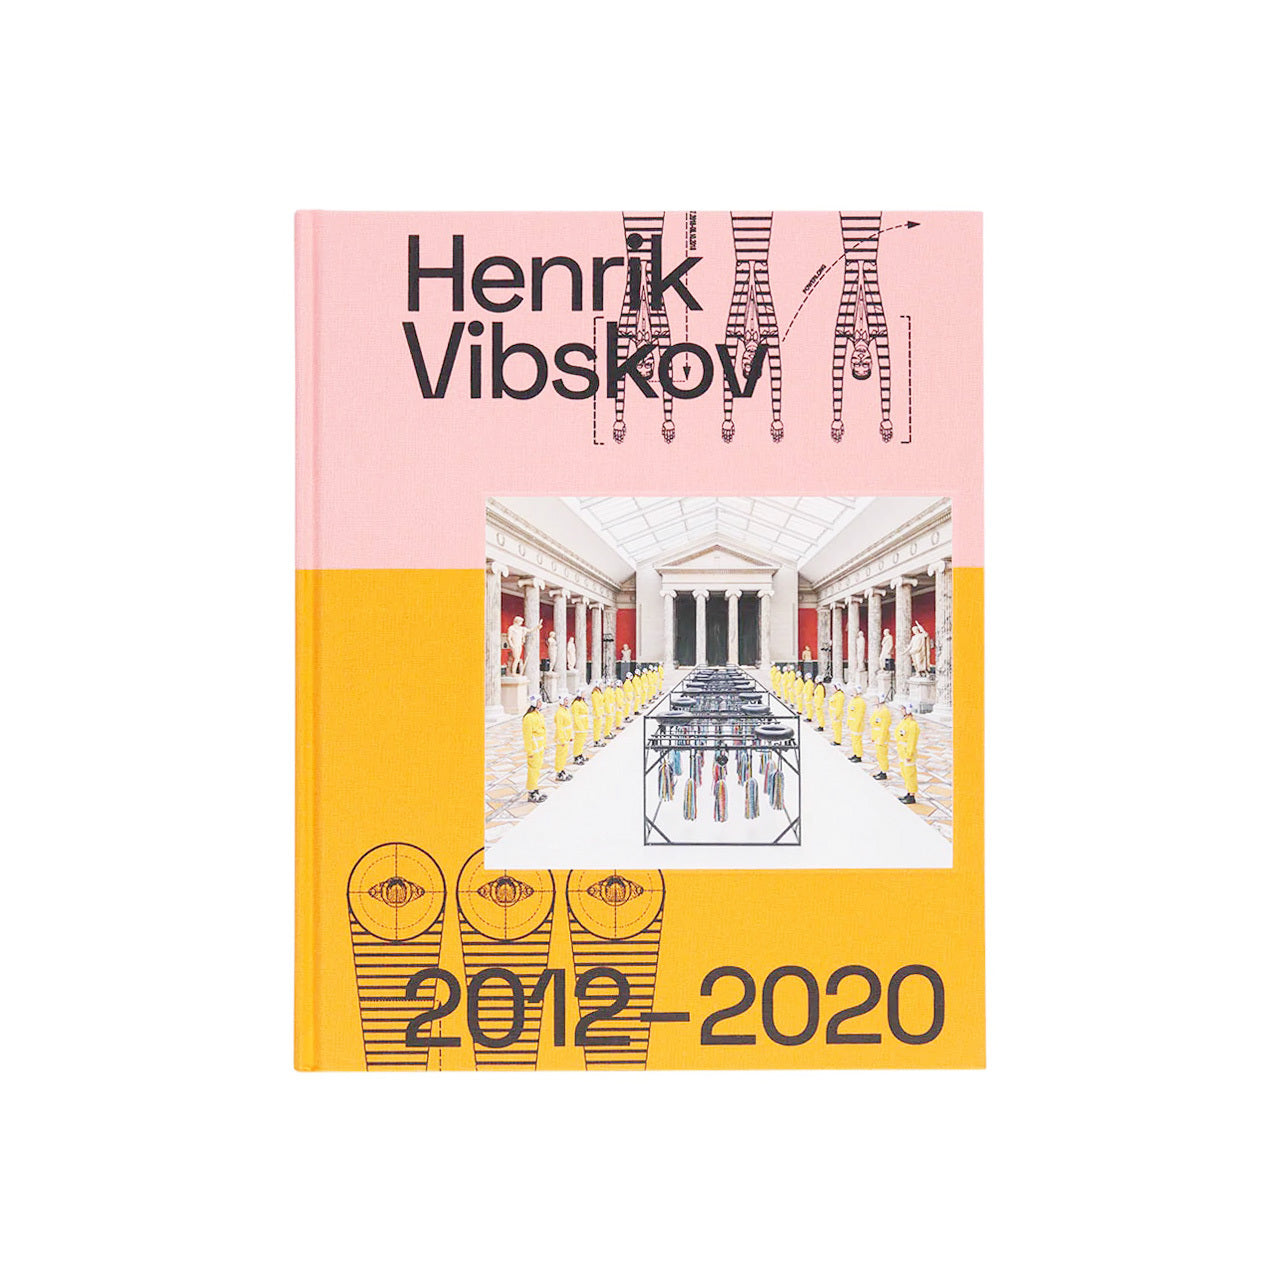 henrik vibskov buch 3 2012 - 2020